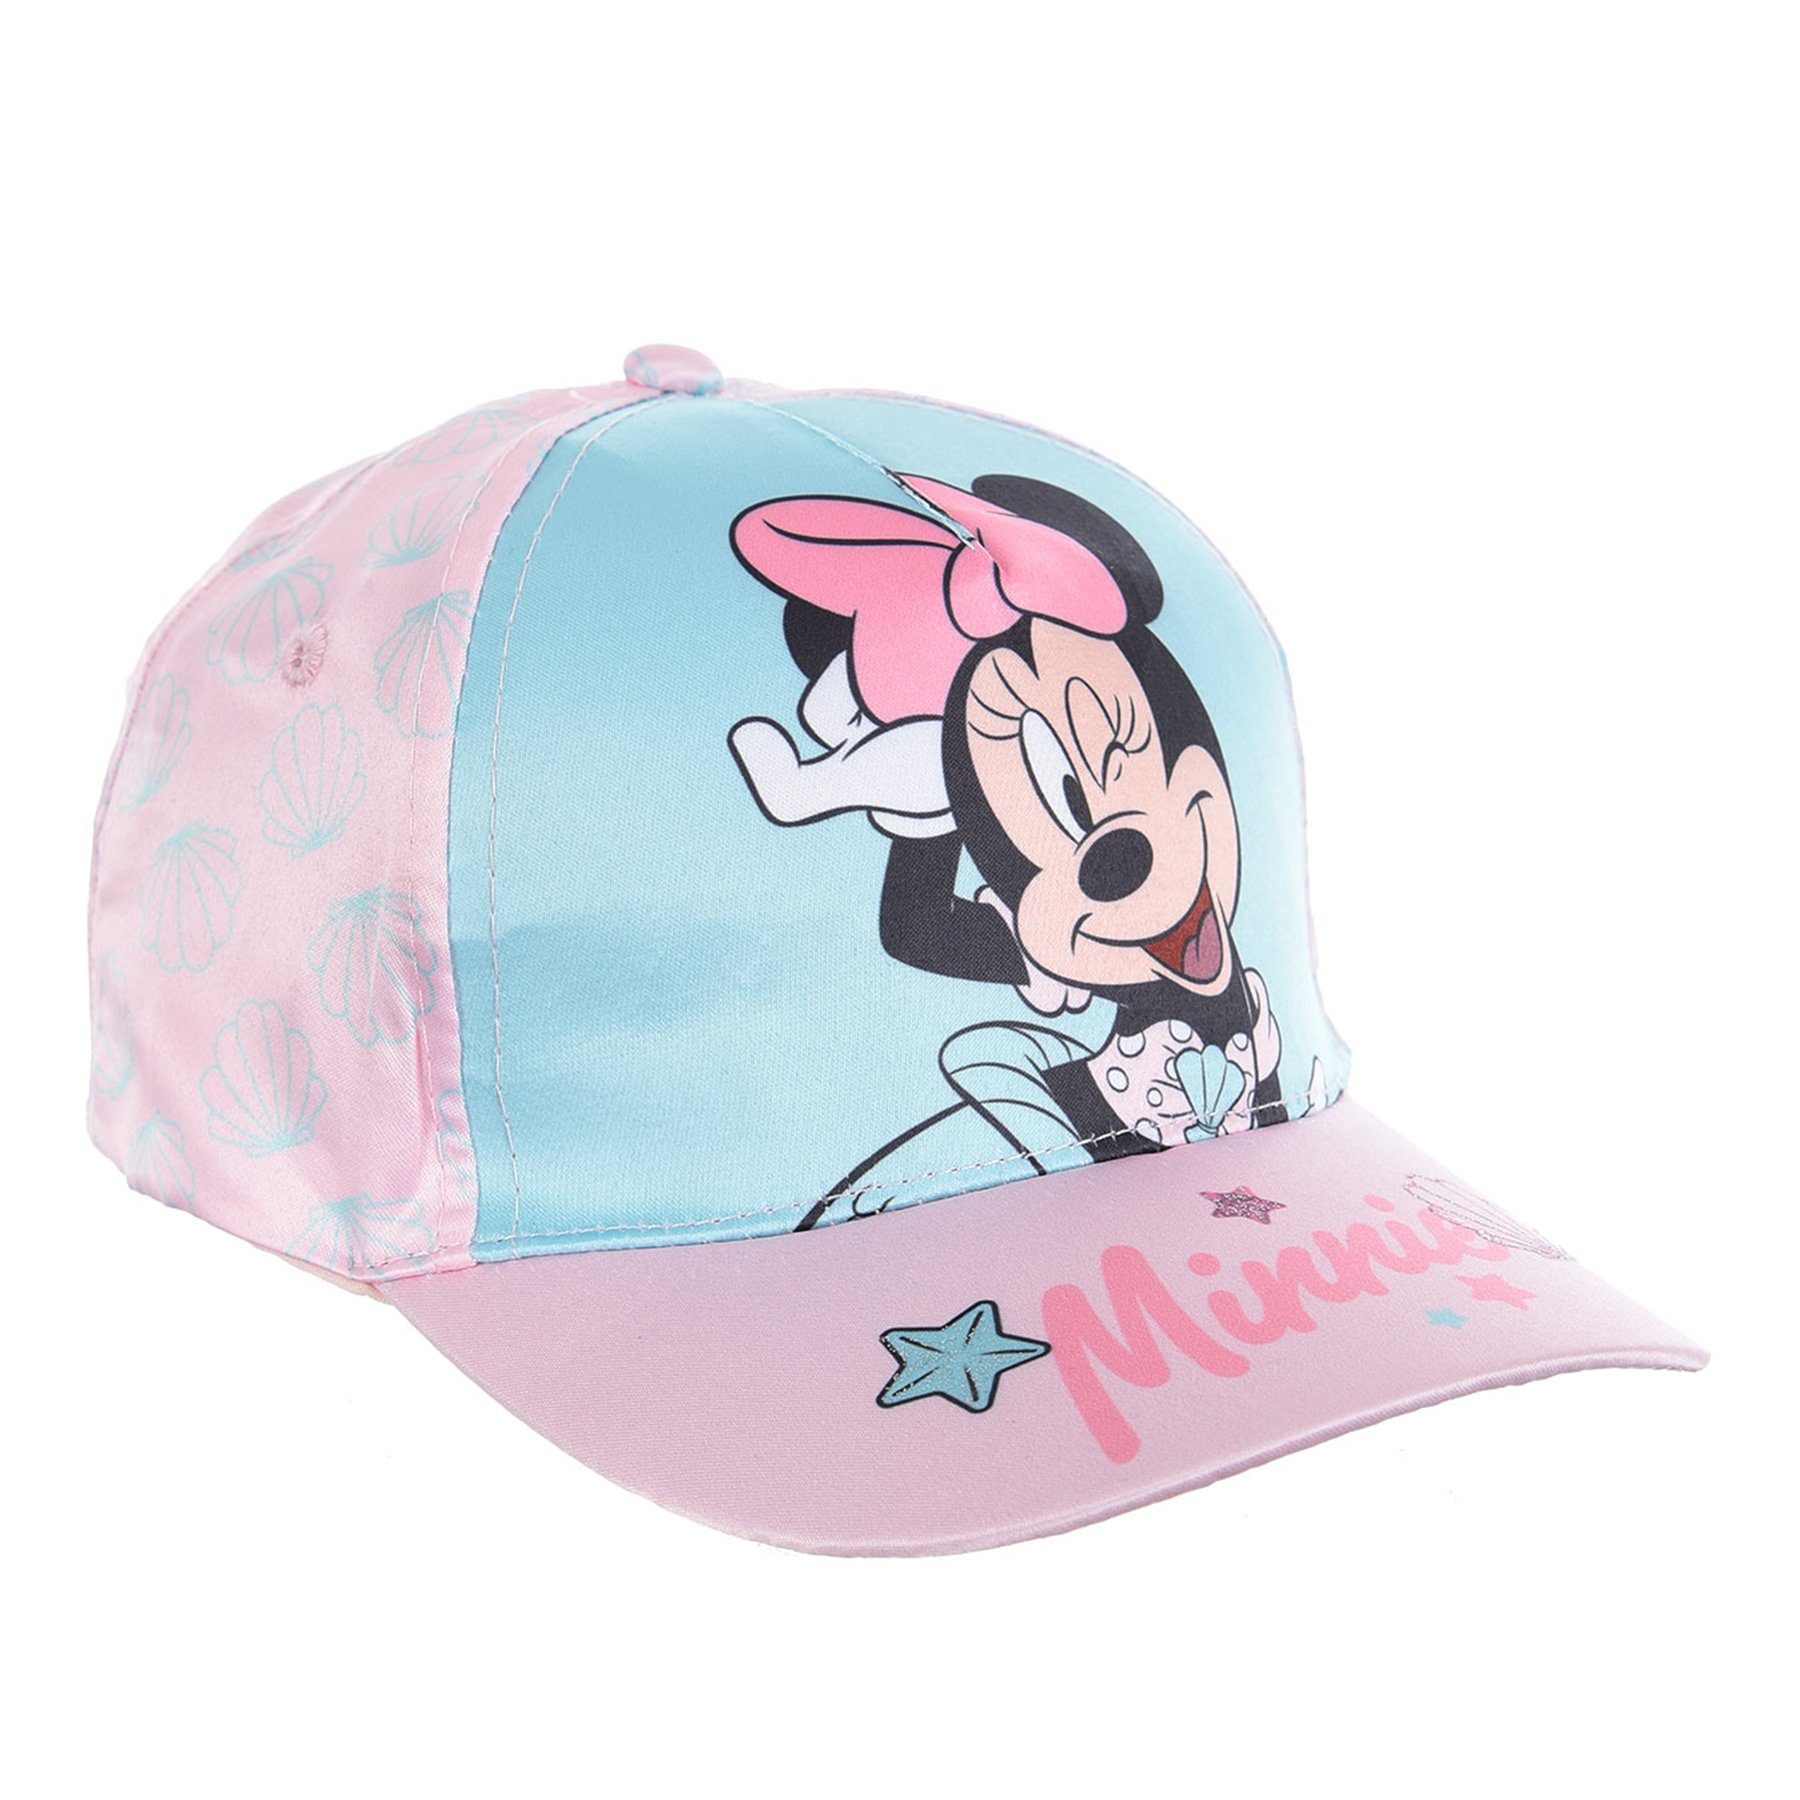 Disney Minnie Mouse Baseball Cap Kappe Mütze Türkis